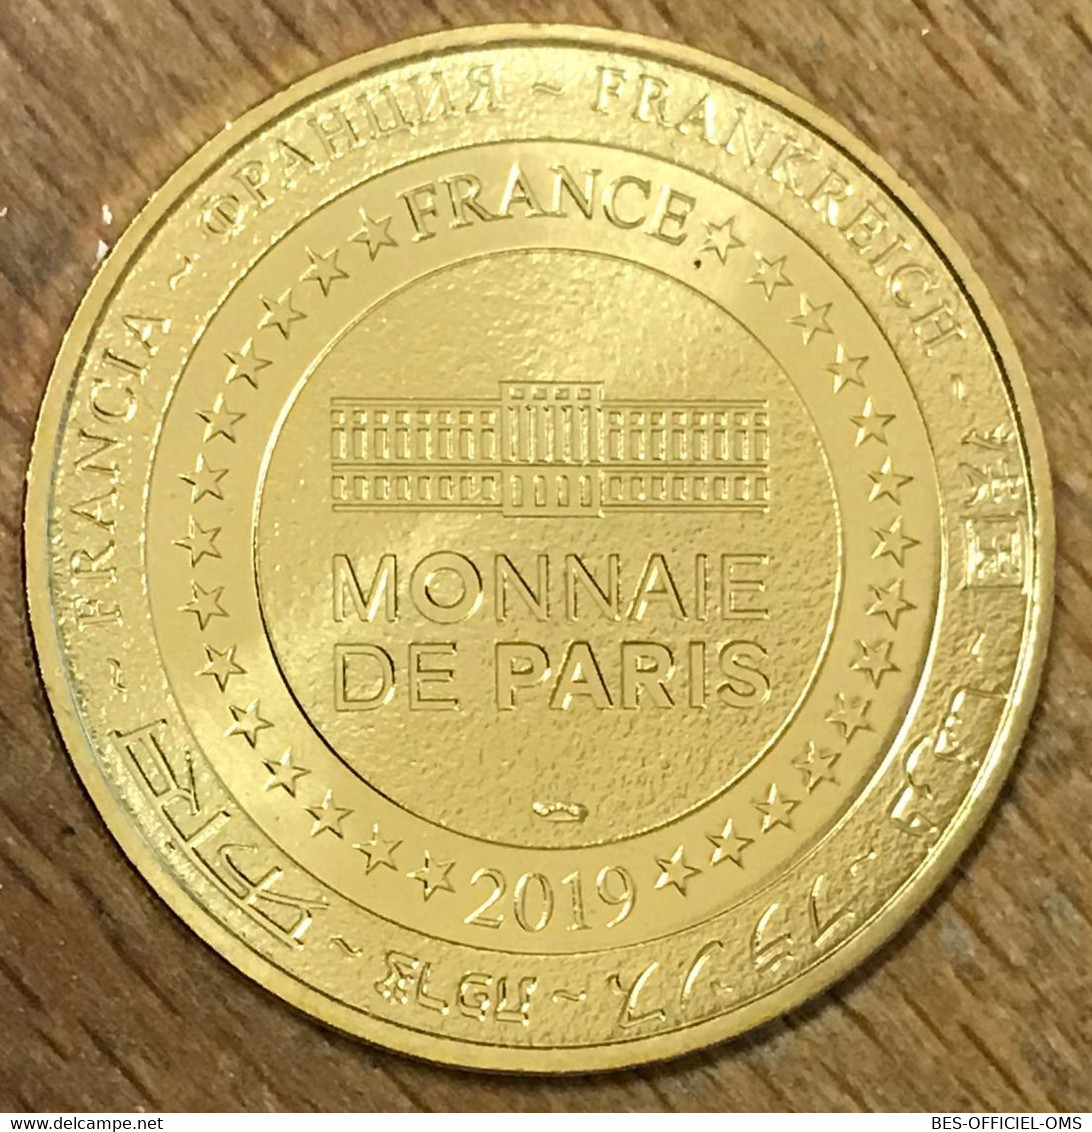 84 LE MONT VENTOUX 1912M MDP 2019 MÉDAILLE SOUVENIR MONNAIE DE PARIS JETON TOURISTIQUE MEDALS COINS TOKENS - 2019